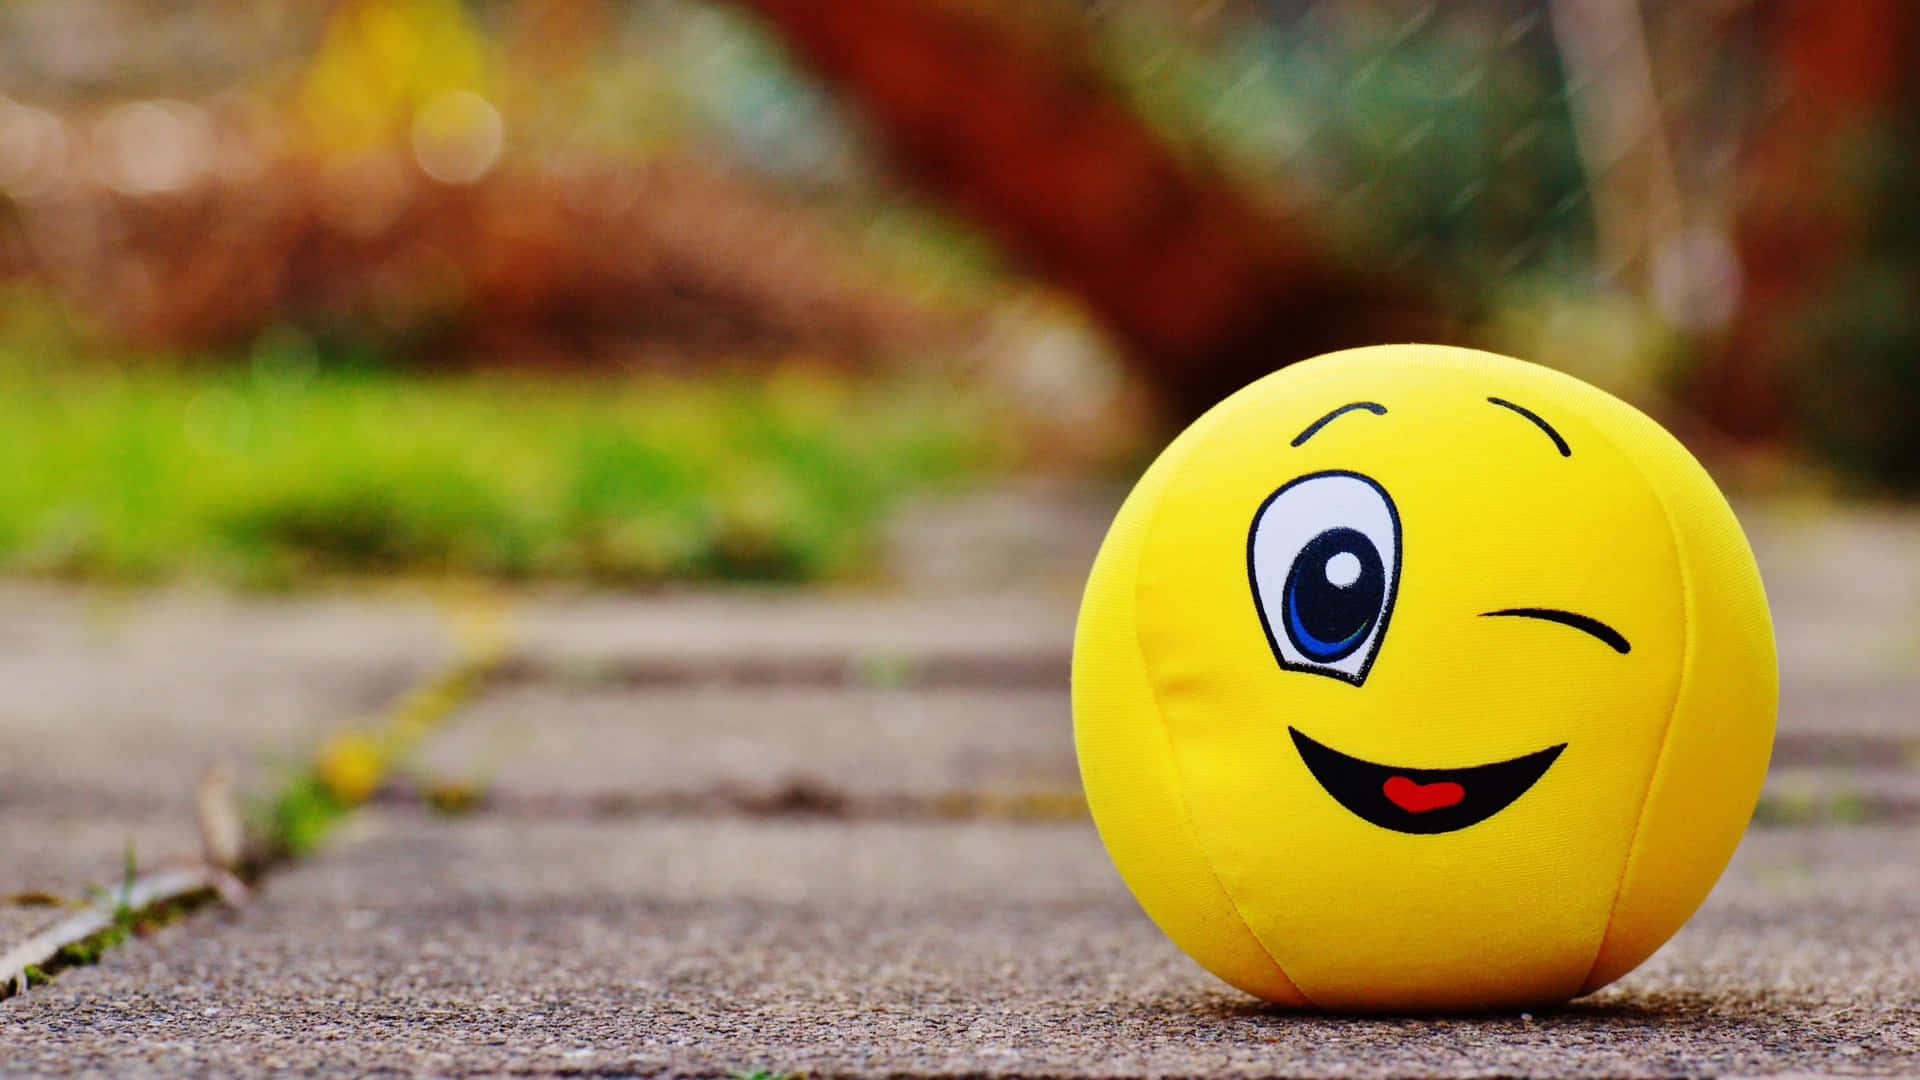 Be Happy | Happy wallpaper, Happy smiley face, Smile wallpaper